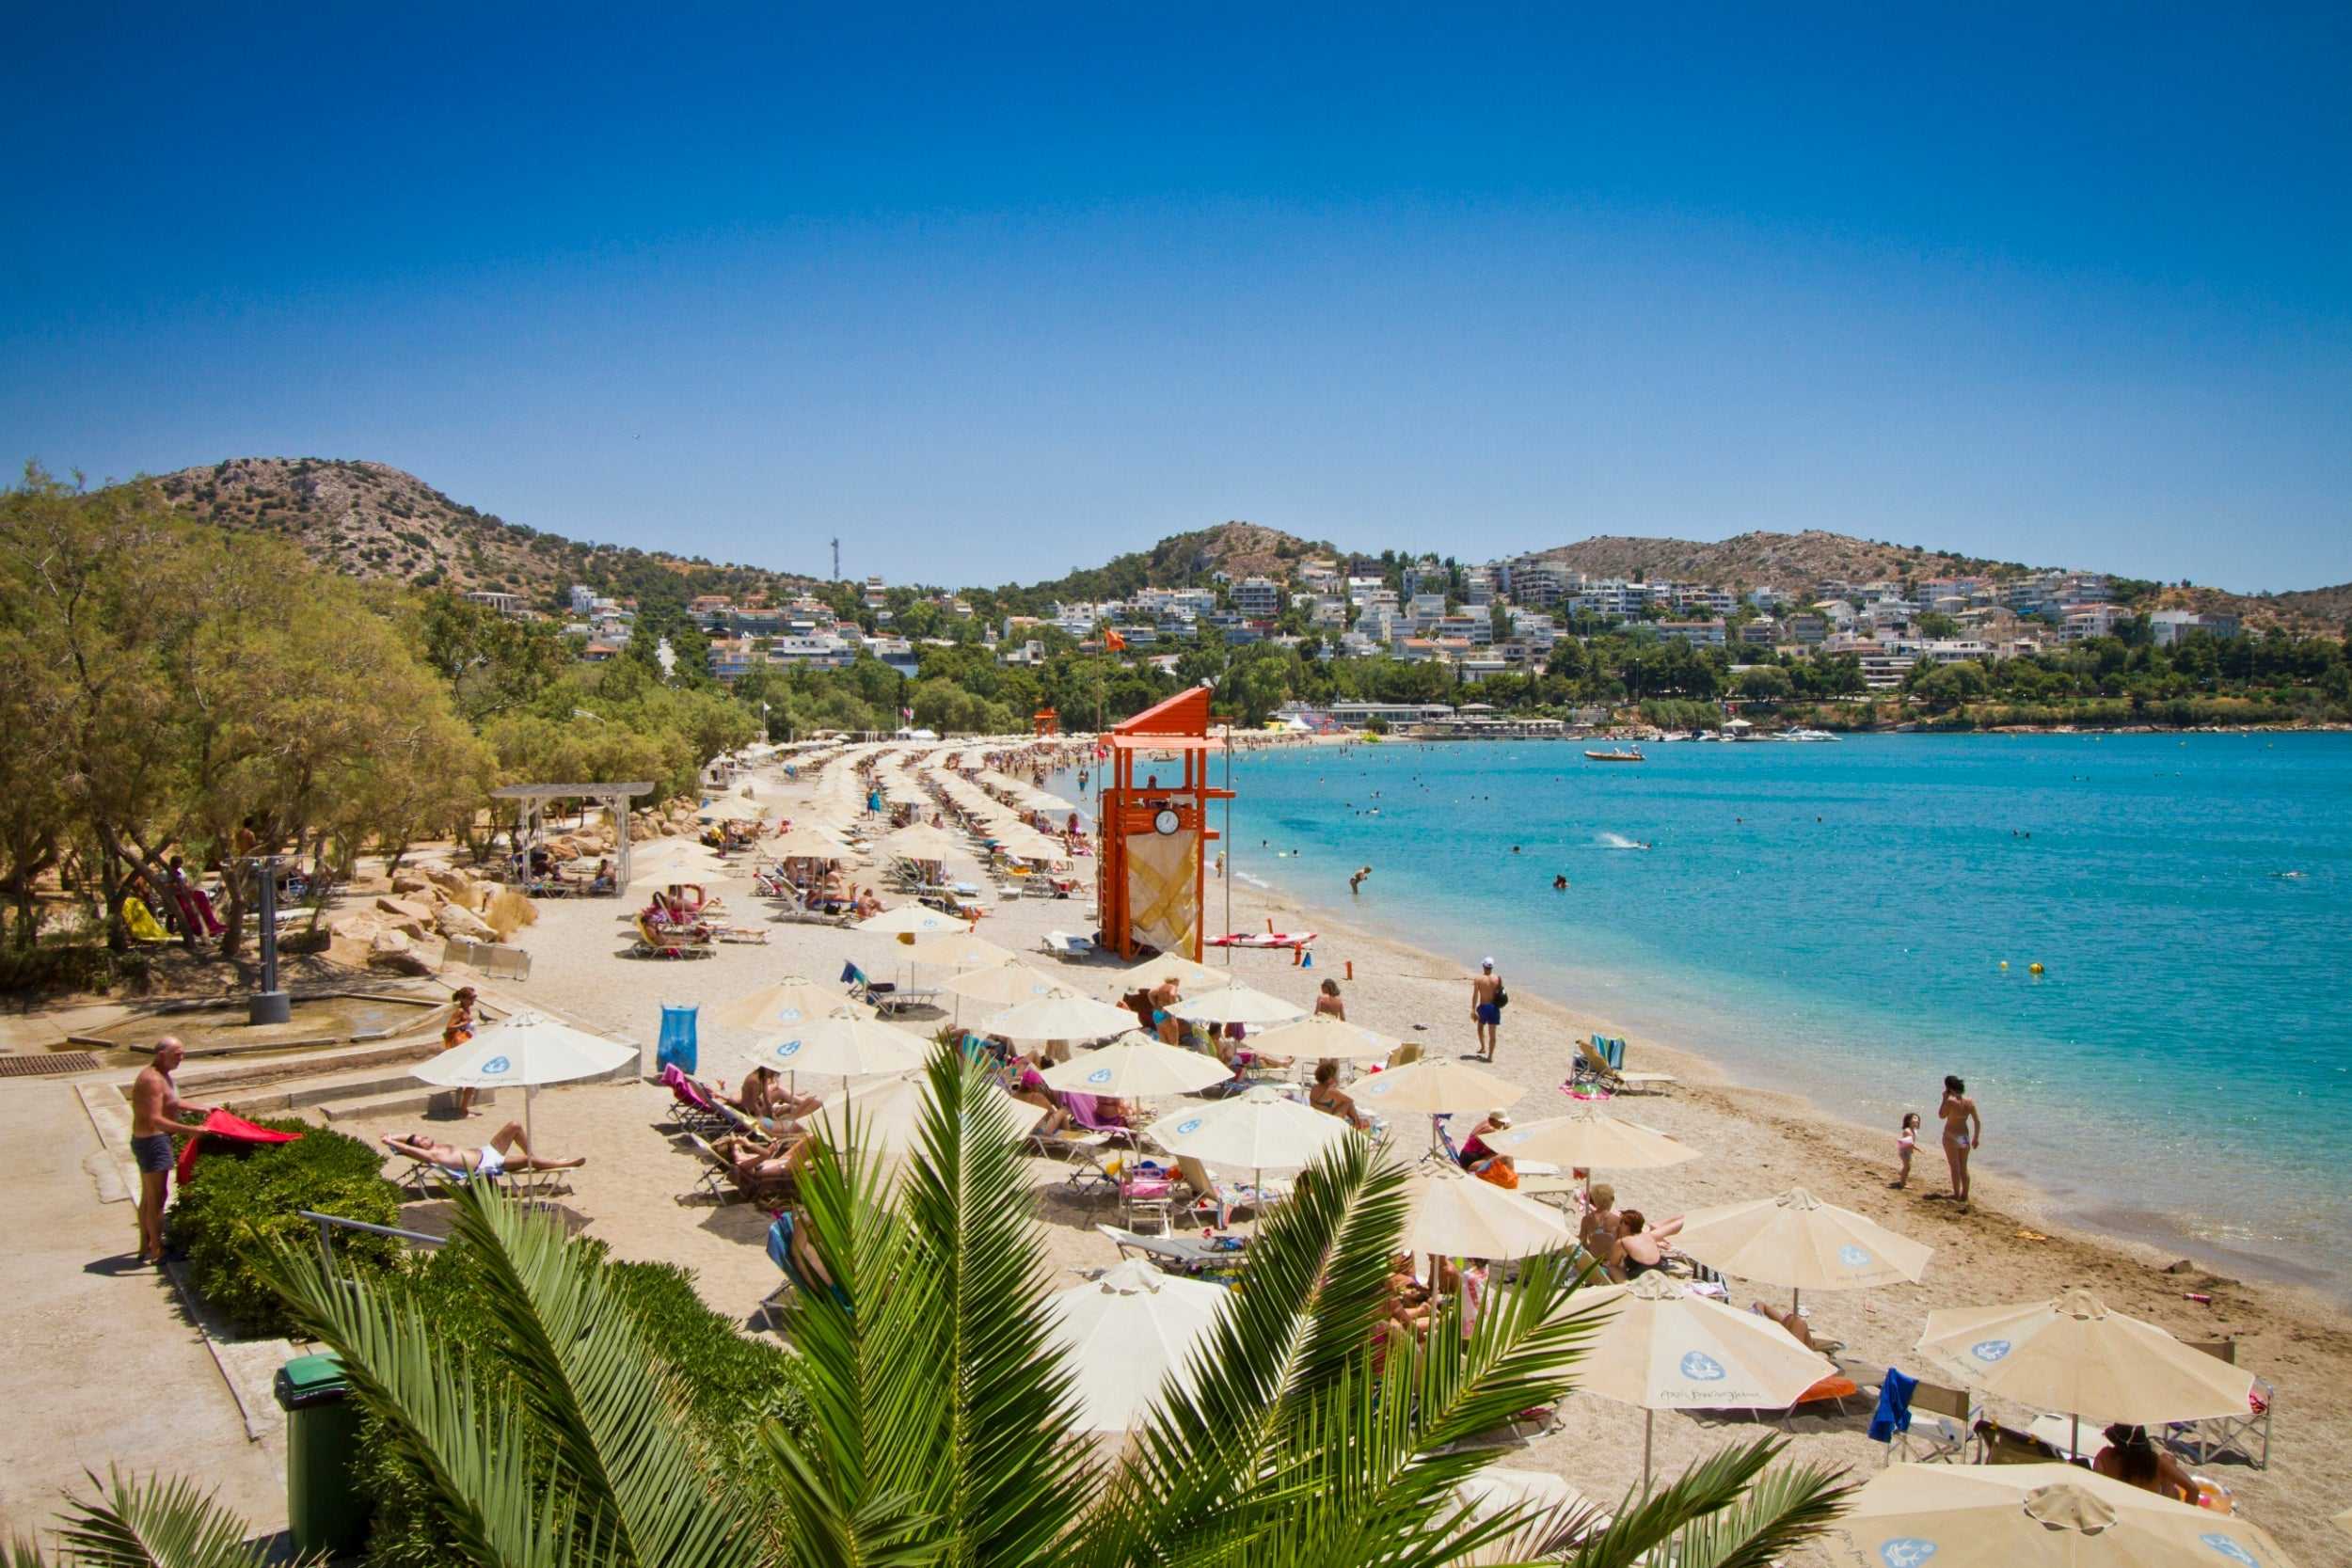 🏖 пляжи афин (греция) 2022: фото, описание, рейтинг 2022, карта пляжей, отзывы